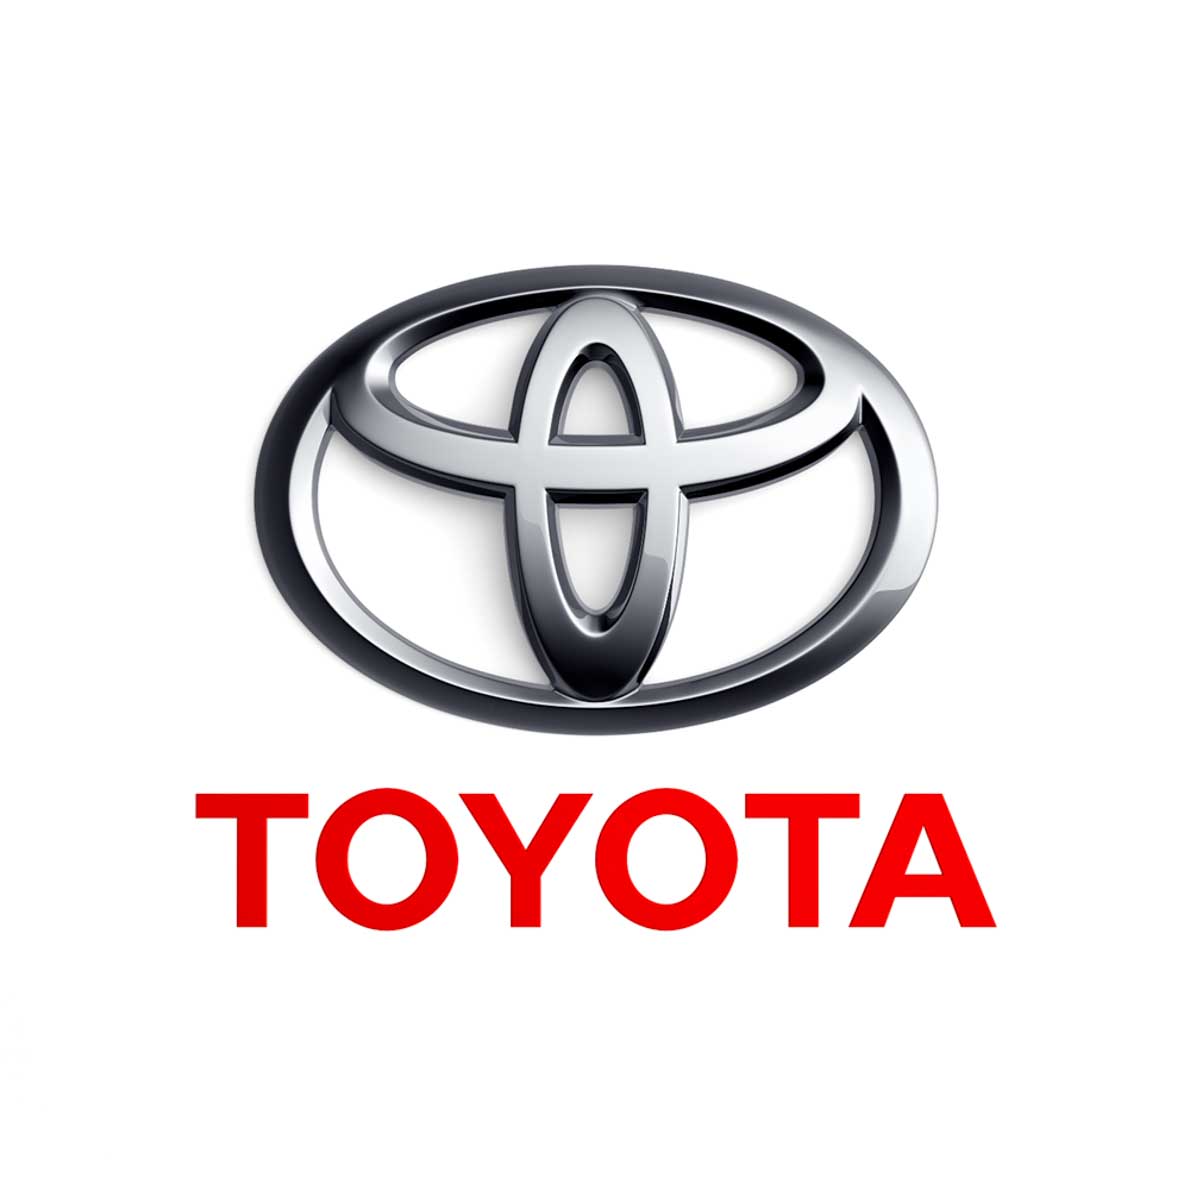 Toyota 工厂开始生产医疗器材协助抗击疫情